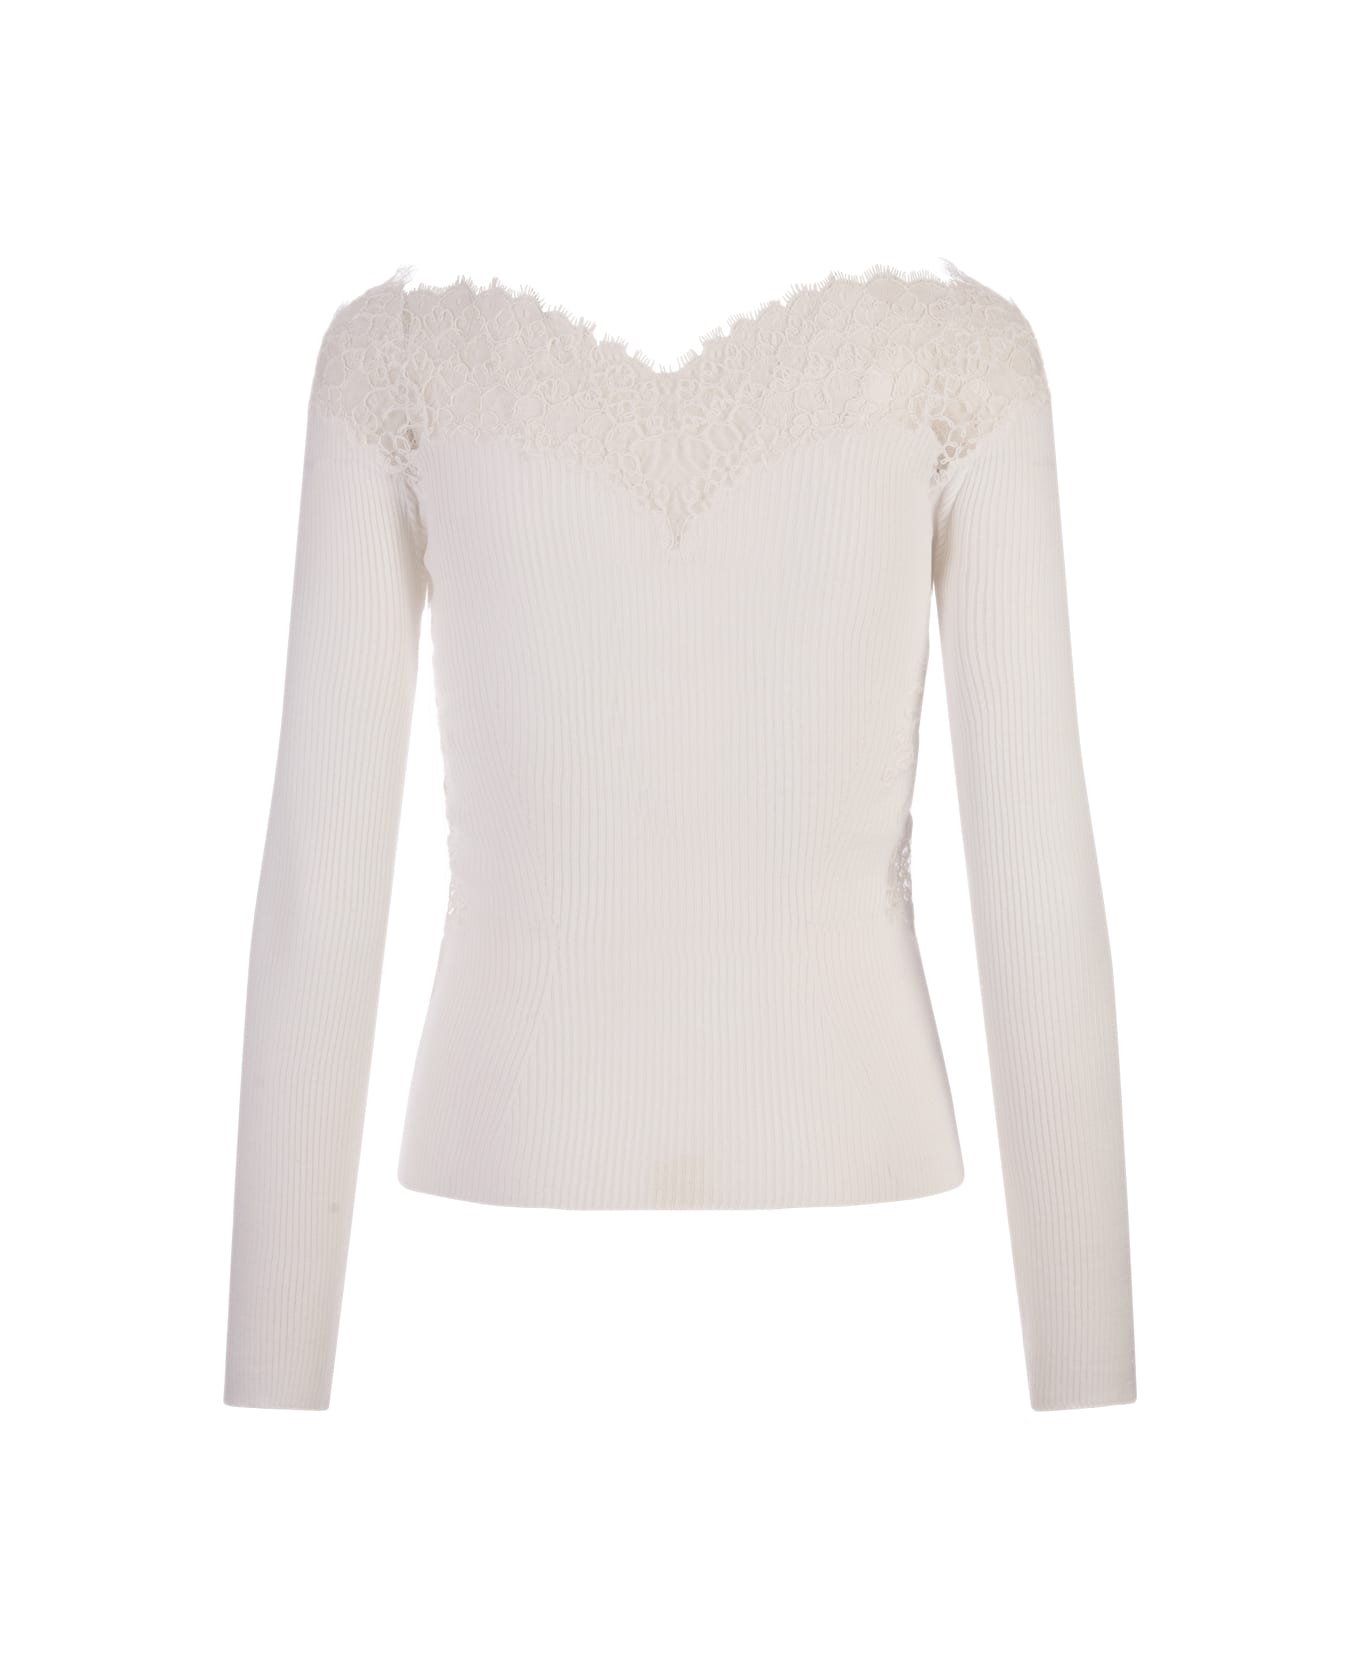 Ermanno Scervino White Sweater With Lace And Boat Neckline - White